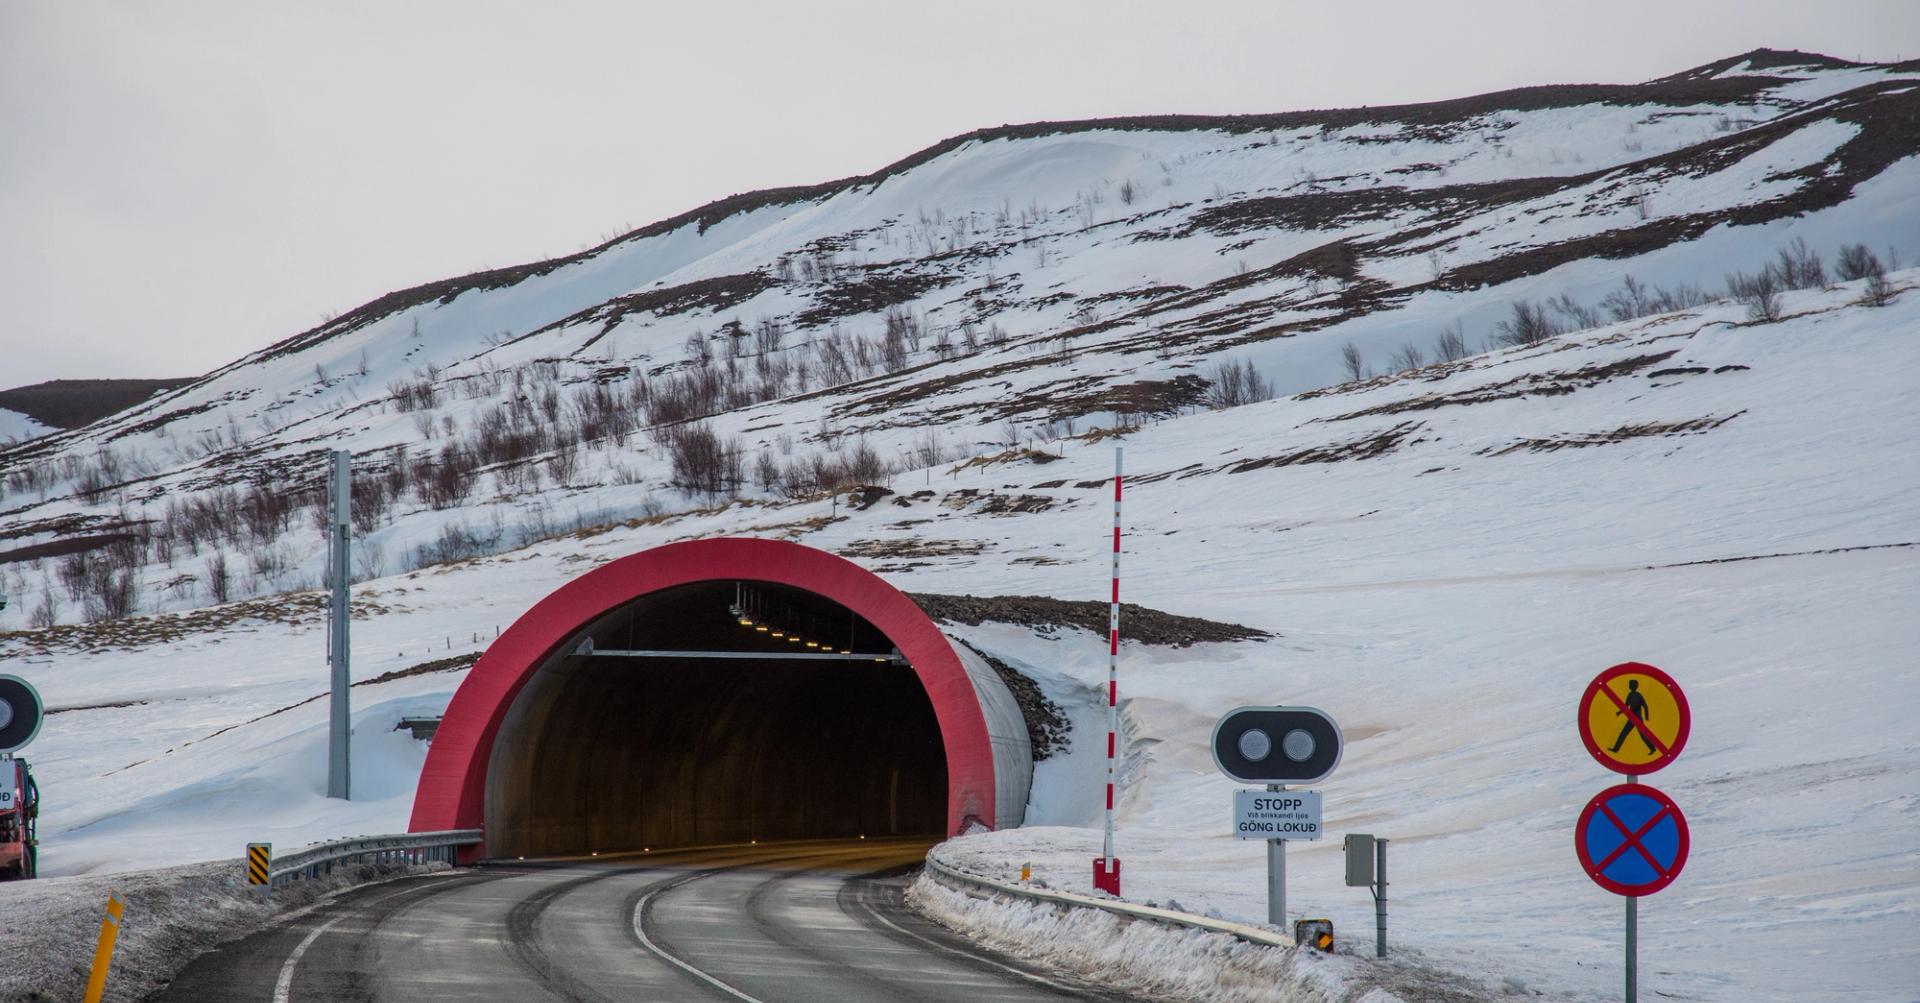 Vadlaheidi toll road tunnel in north Iceland of Akureyri